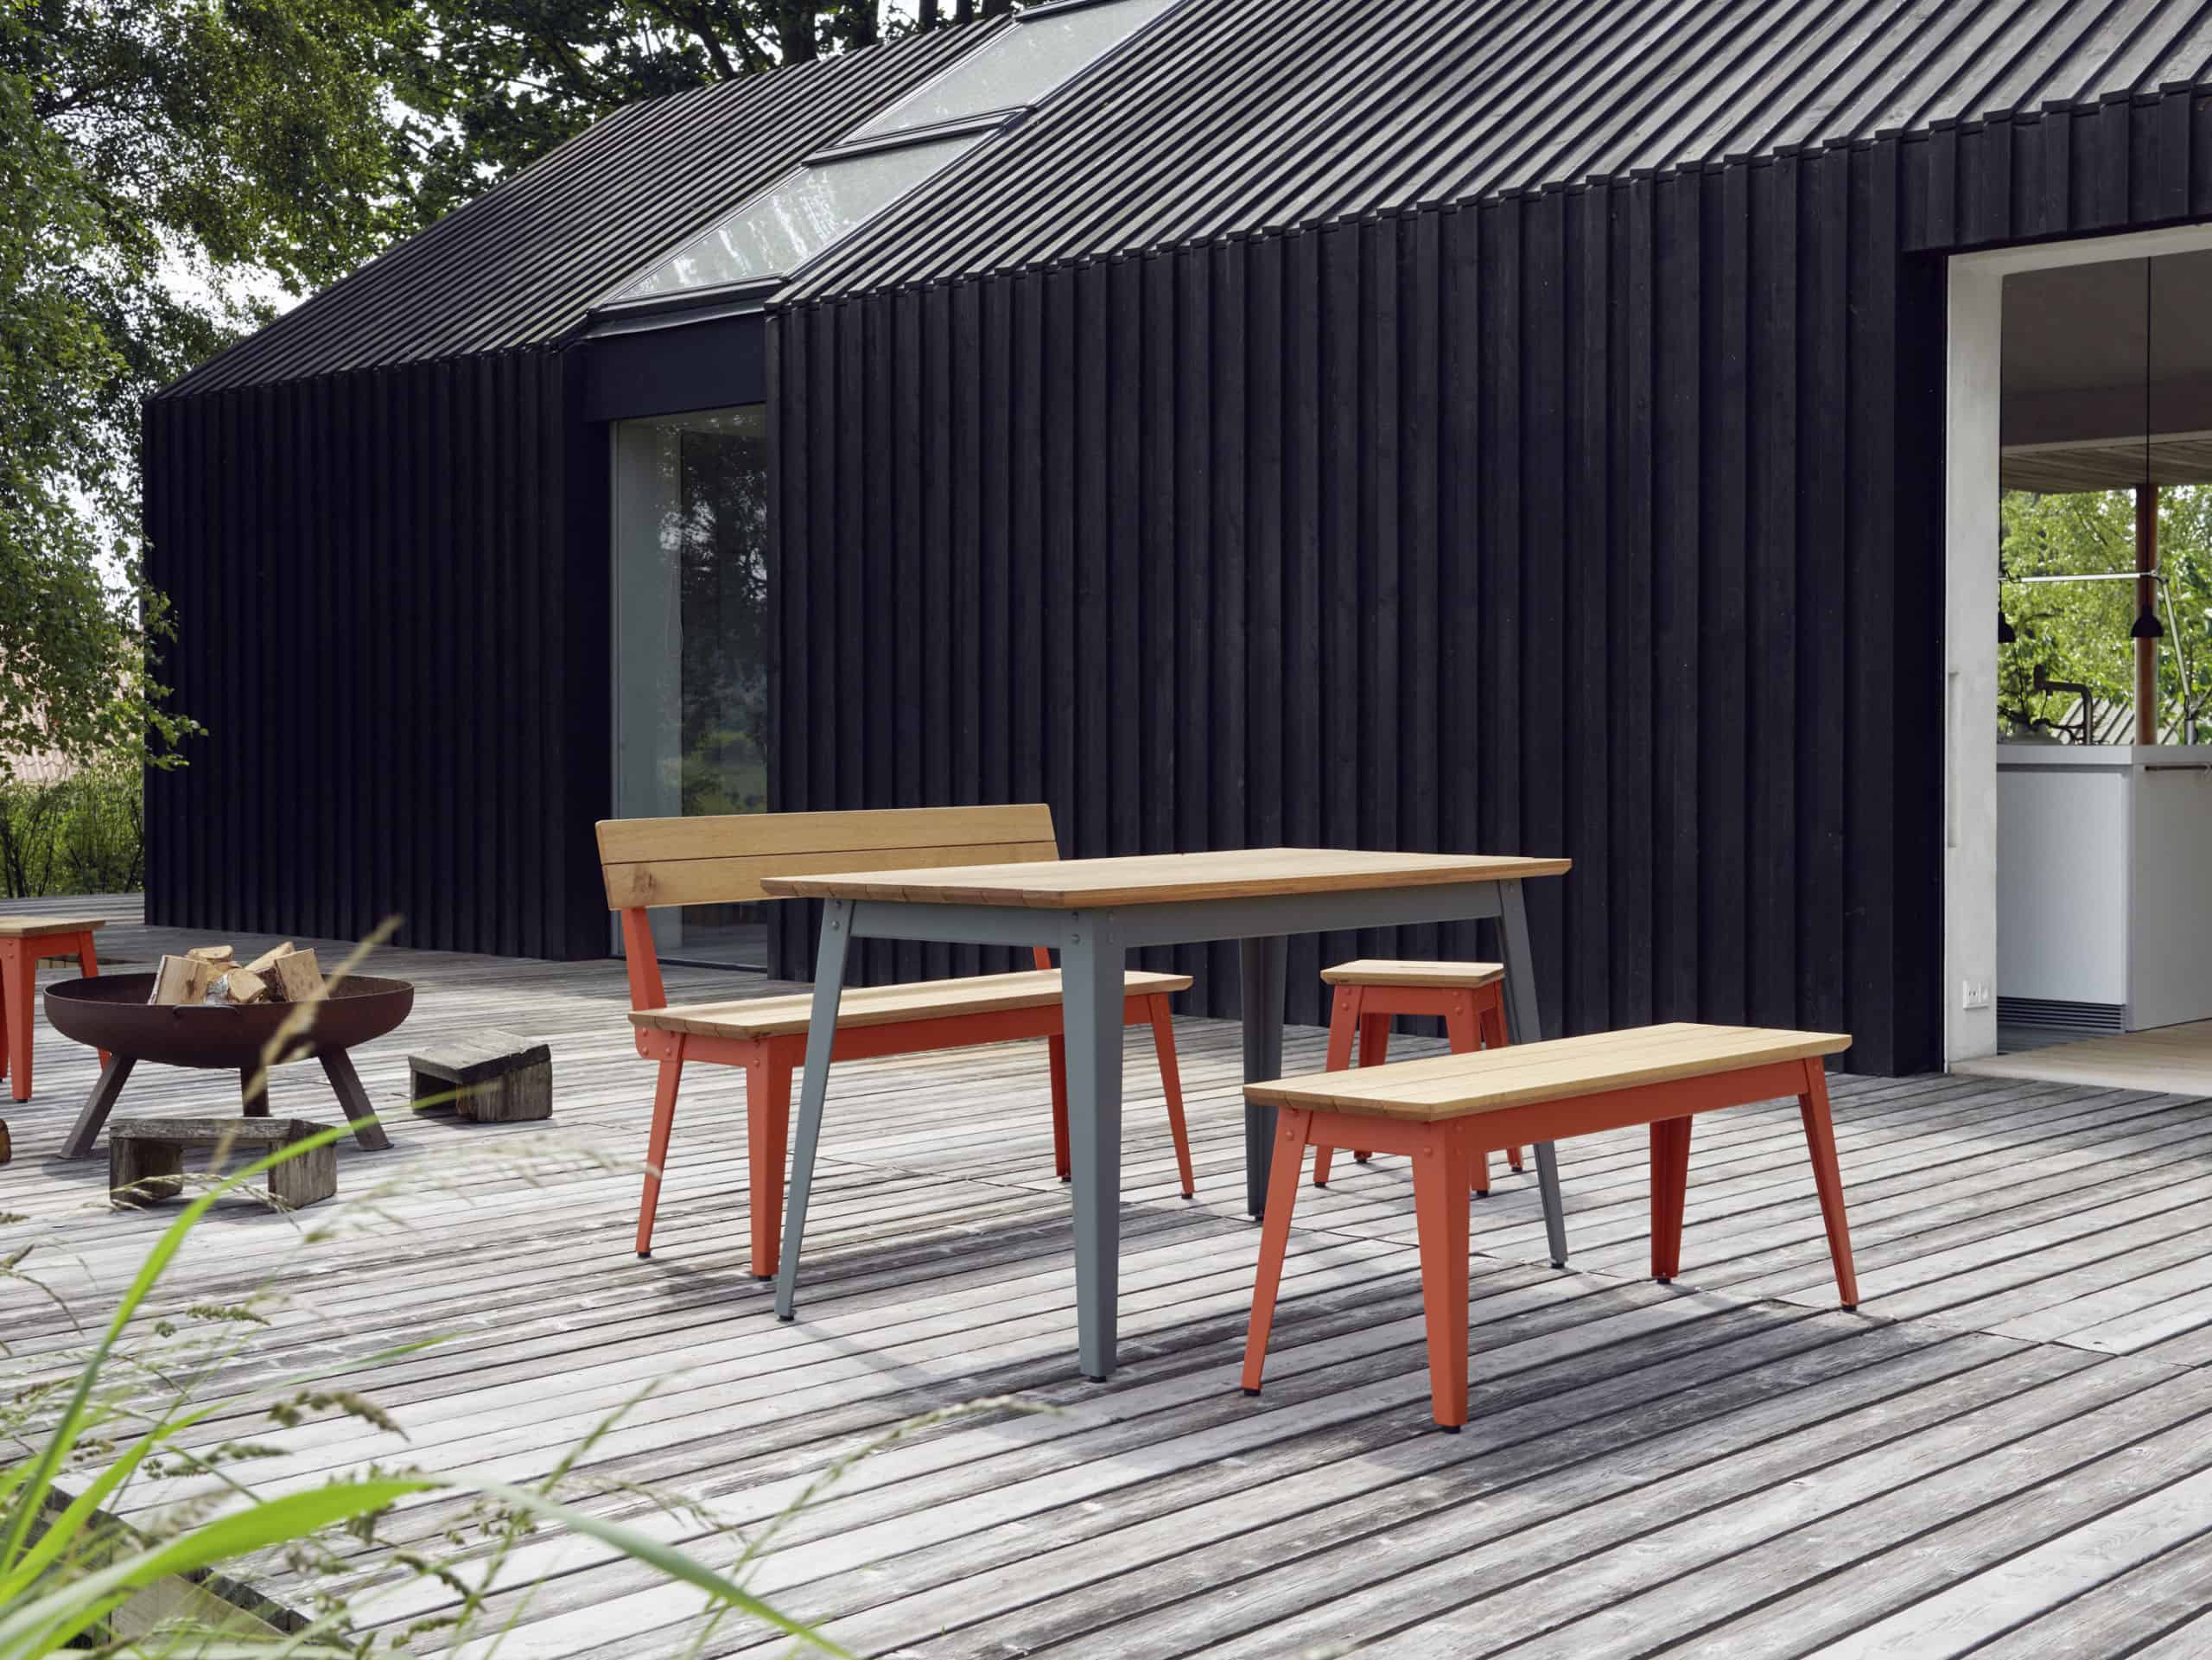 Outdoor-Tisch mit Outdoor-Hockern und Outdoor-Bänke aus Holz von Jan Cray auf einer Holzterrasse vor einer schwarzen Holzfassade.